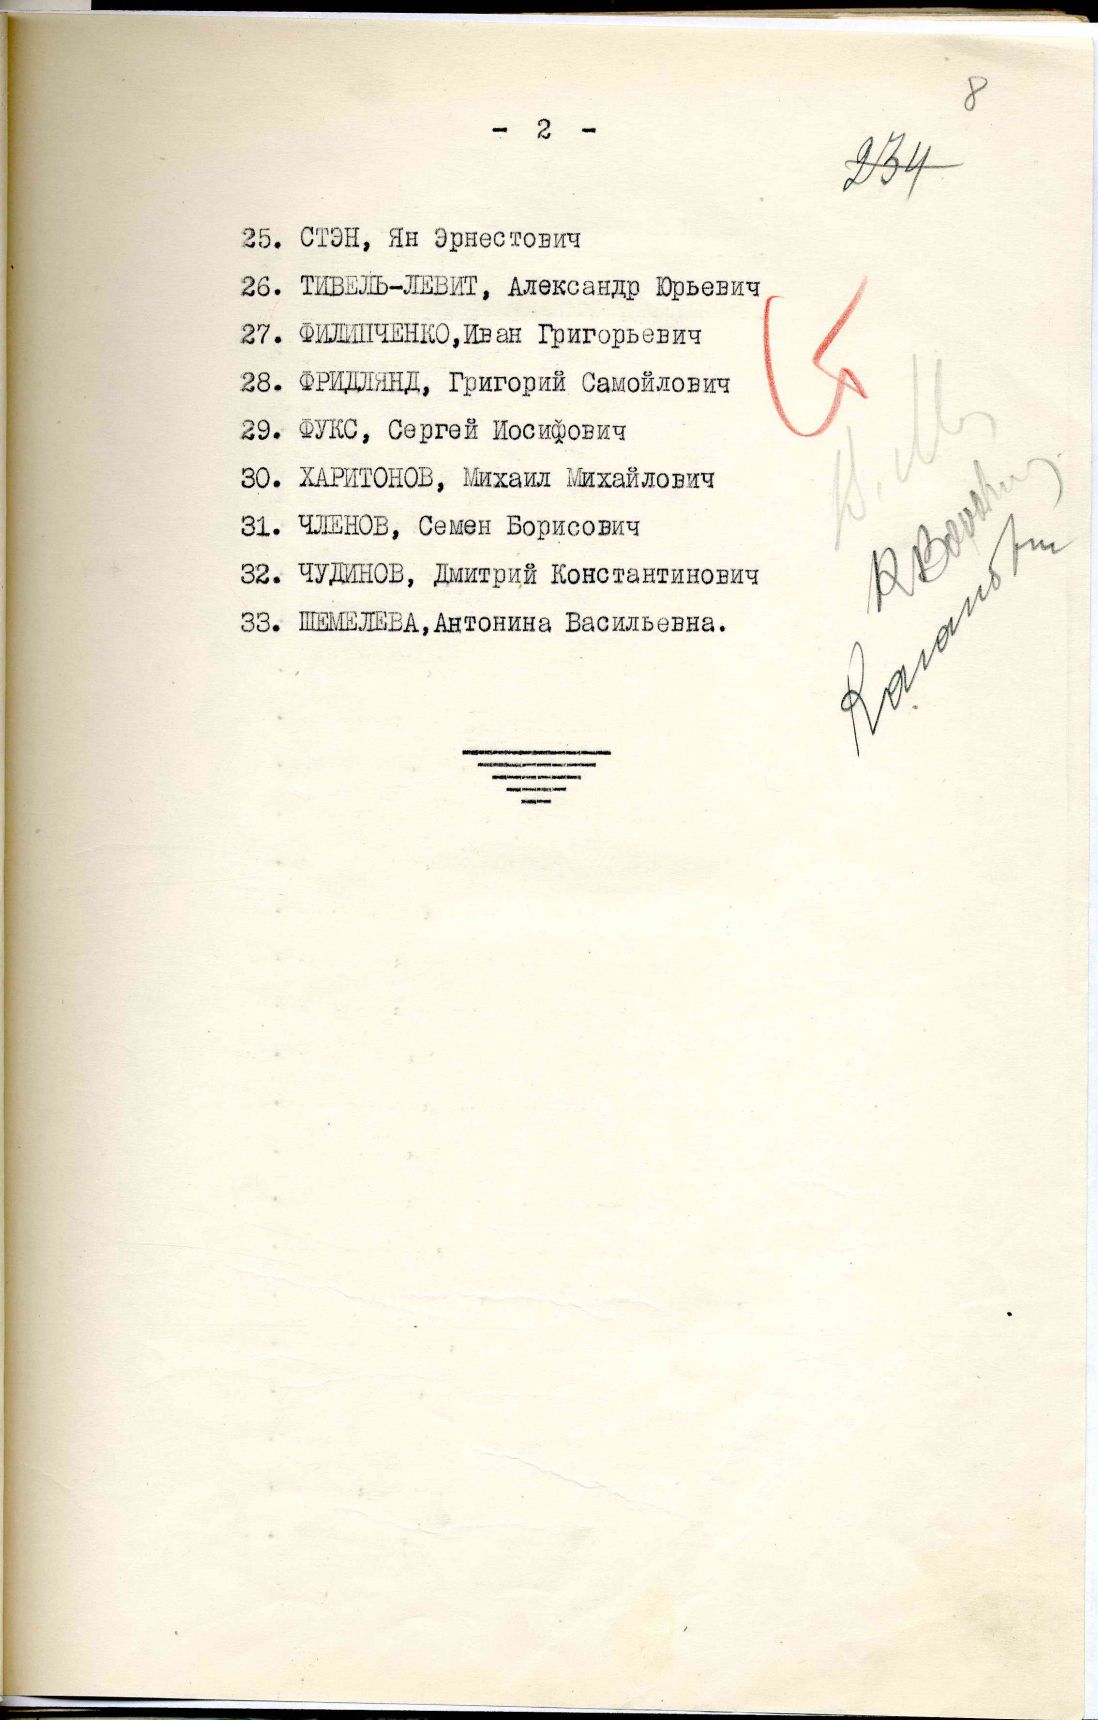 Сталинские списки: список лиц от 27 февраля 1937 года. Москва-центр и еще 13 регионов